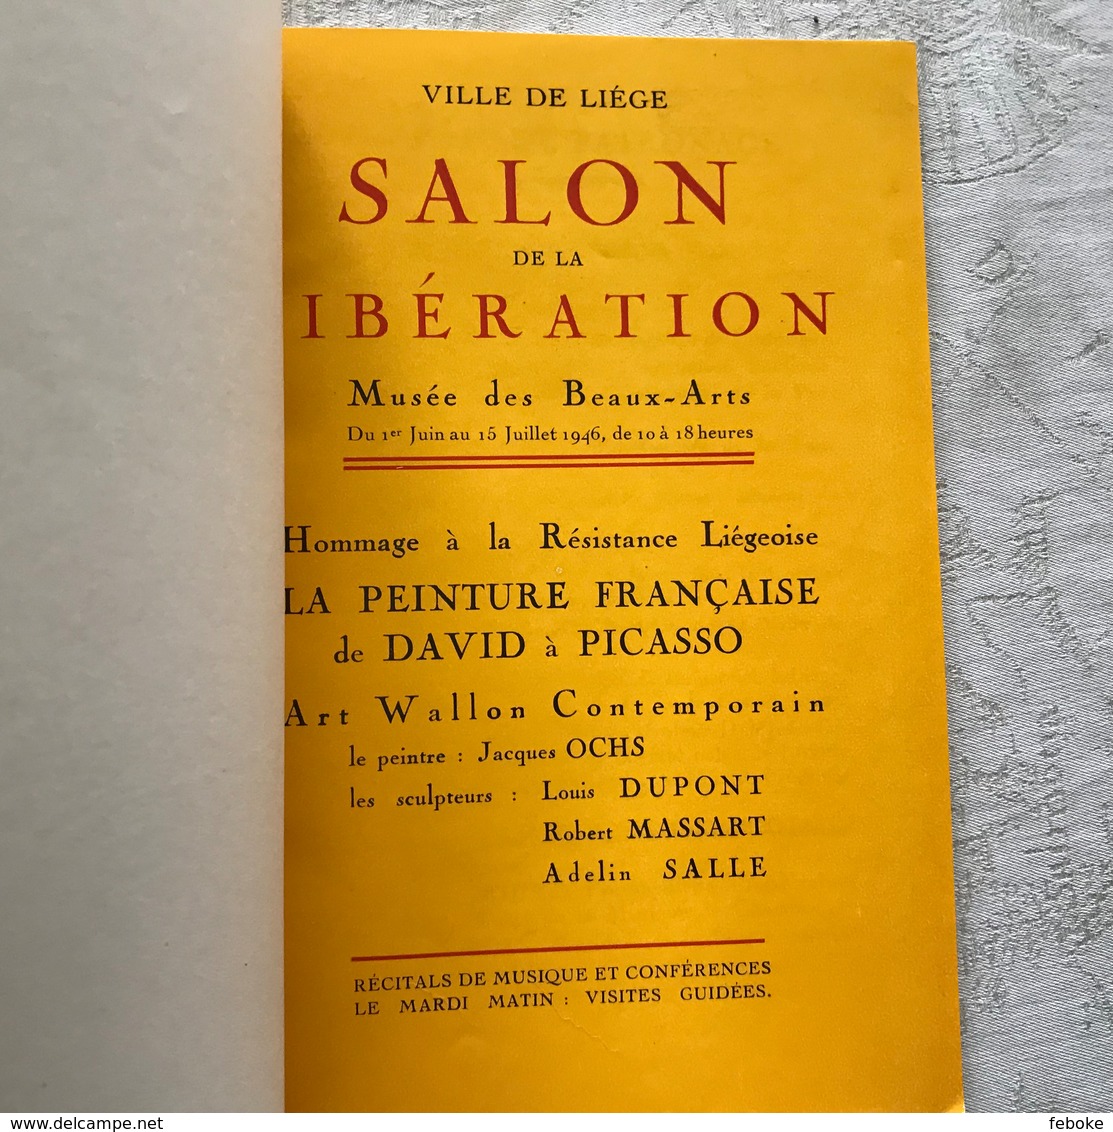 VILLE DE LIEGE SALON DE LA LIBERATION CATALOGUE ( 1946 ) - OCHS, DUPONT, MASSART, SALLE - HOMMAGE A LA RESISTANCE - Arte